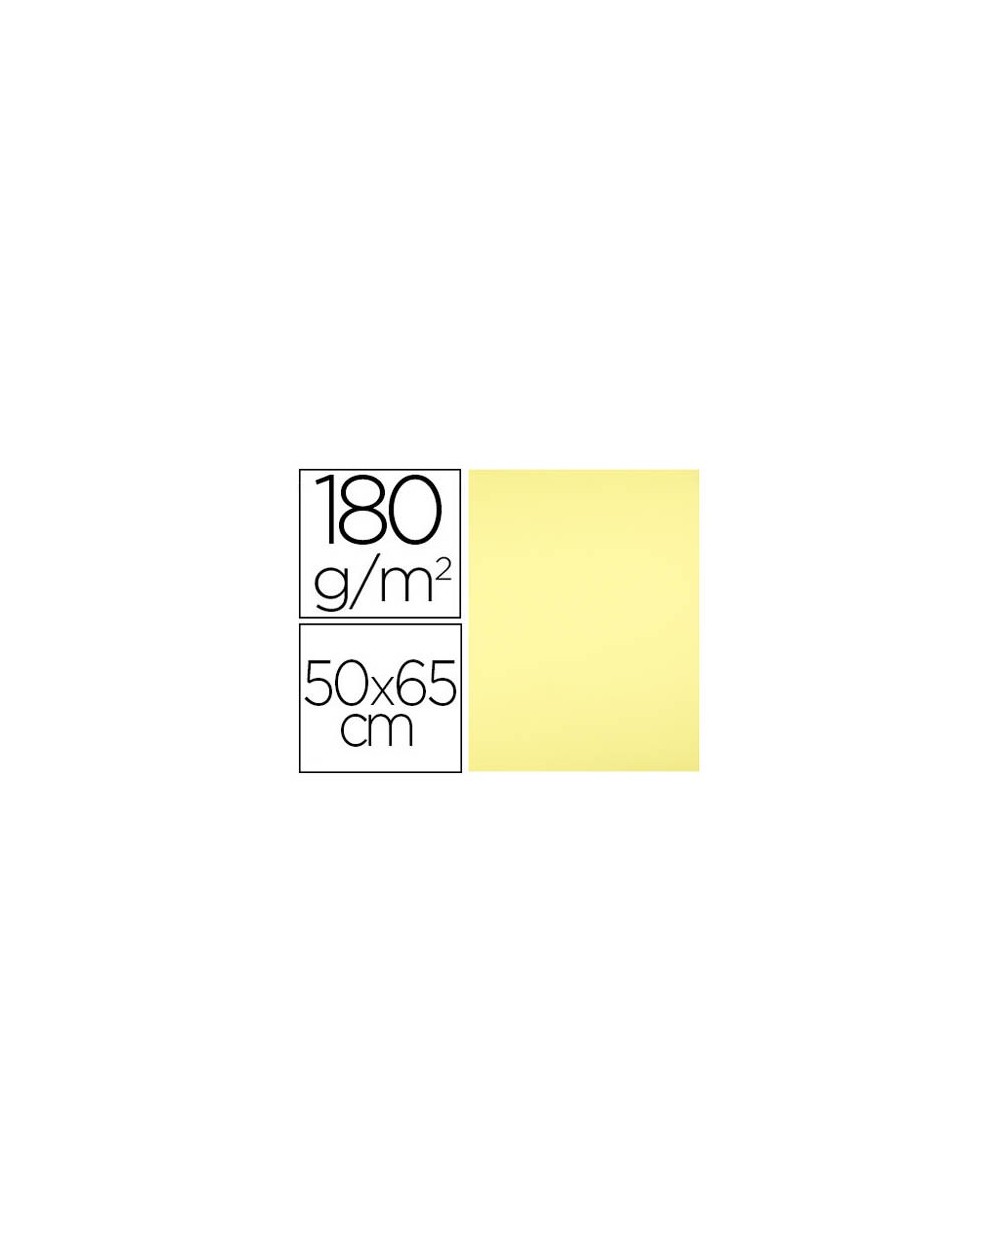 Cartulina liderpapel 50x65 180 gr amarillo medio paquete de 25